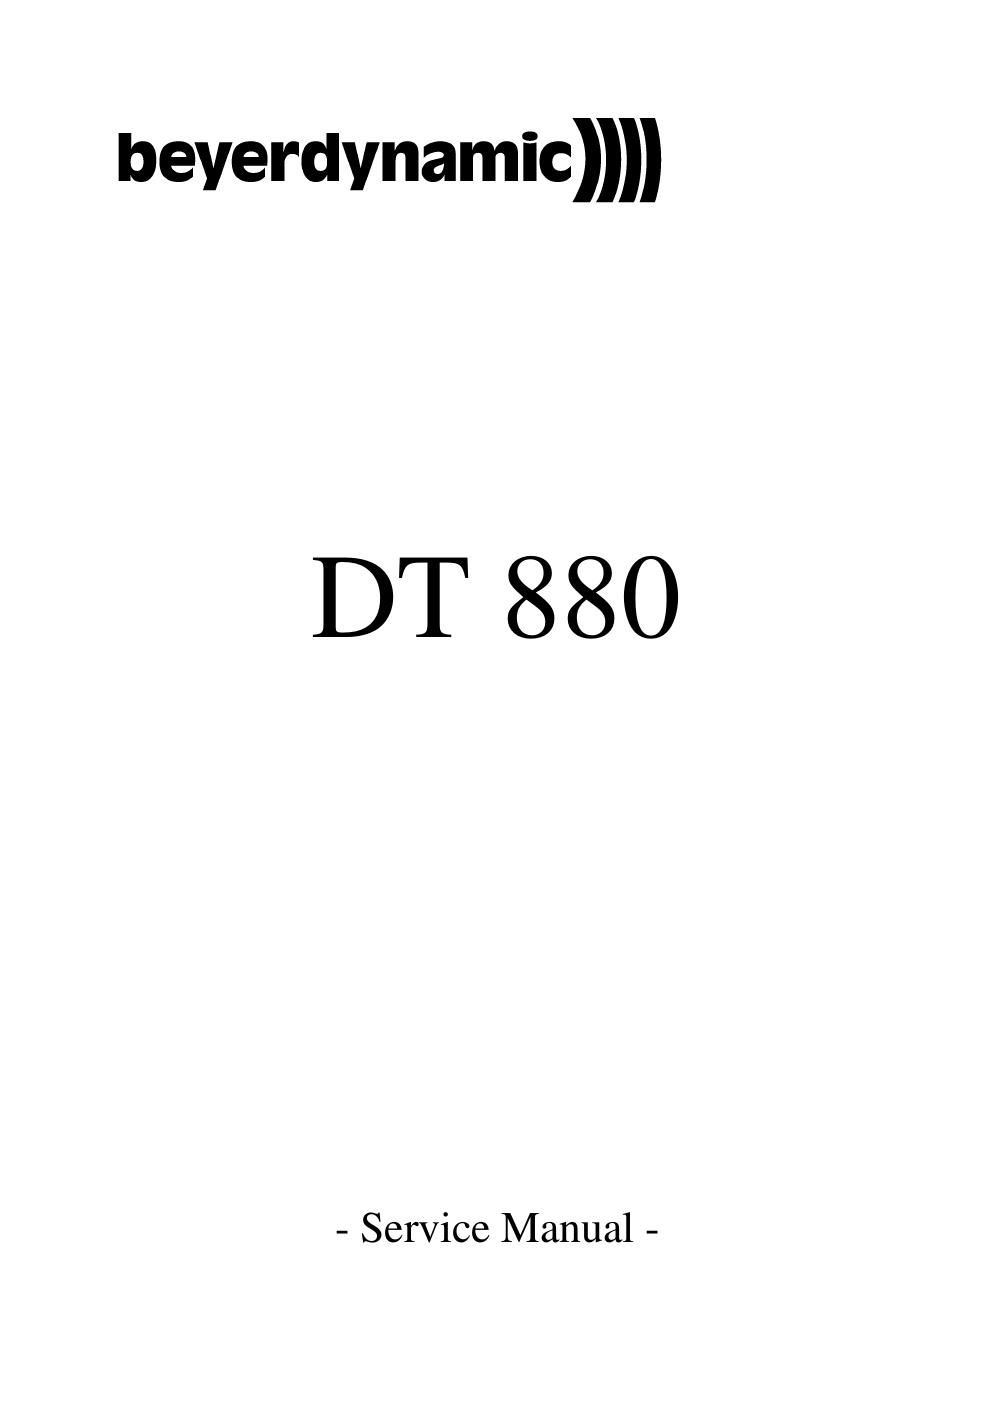 beyerdynamic dt 880 service manual